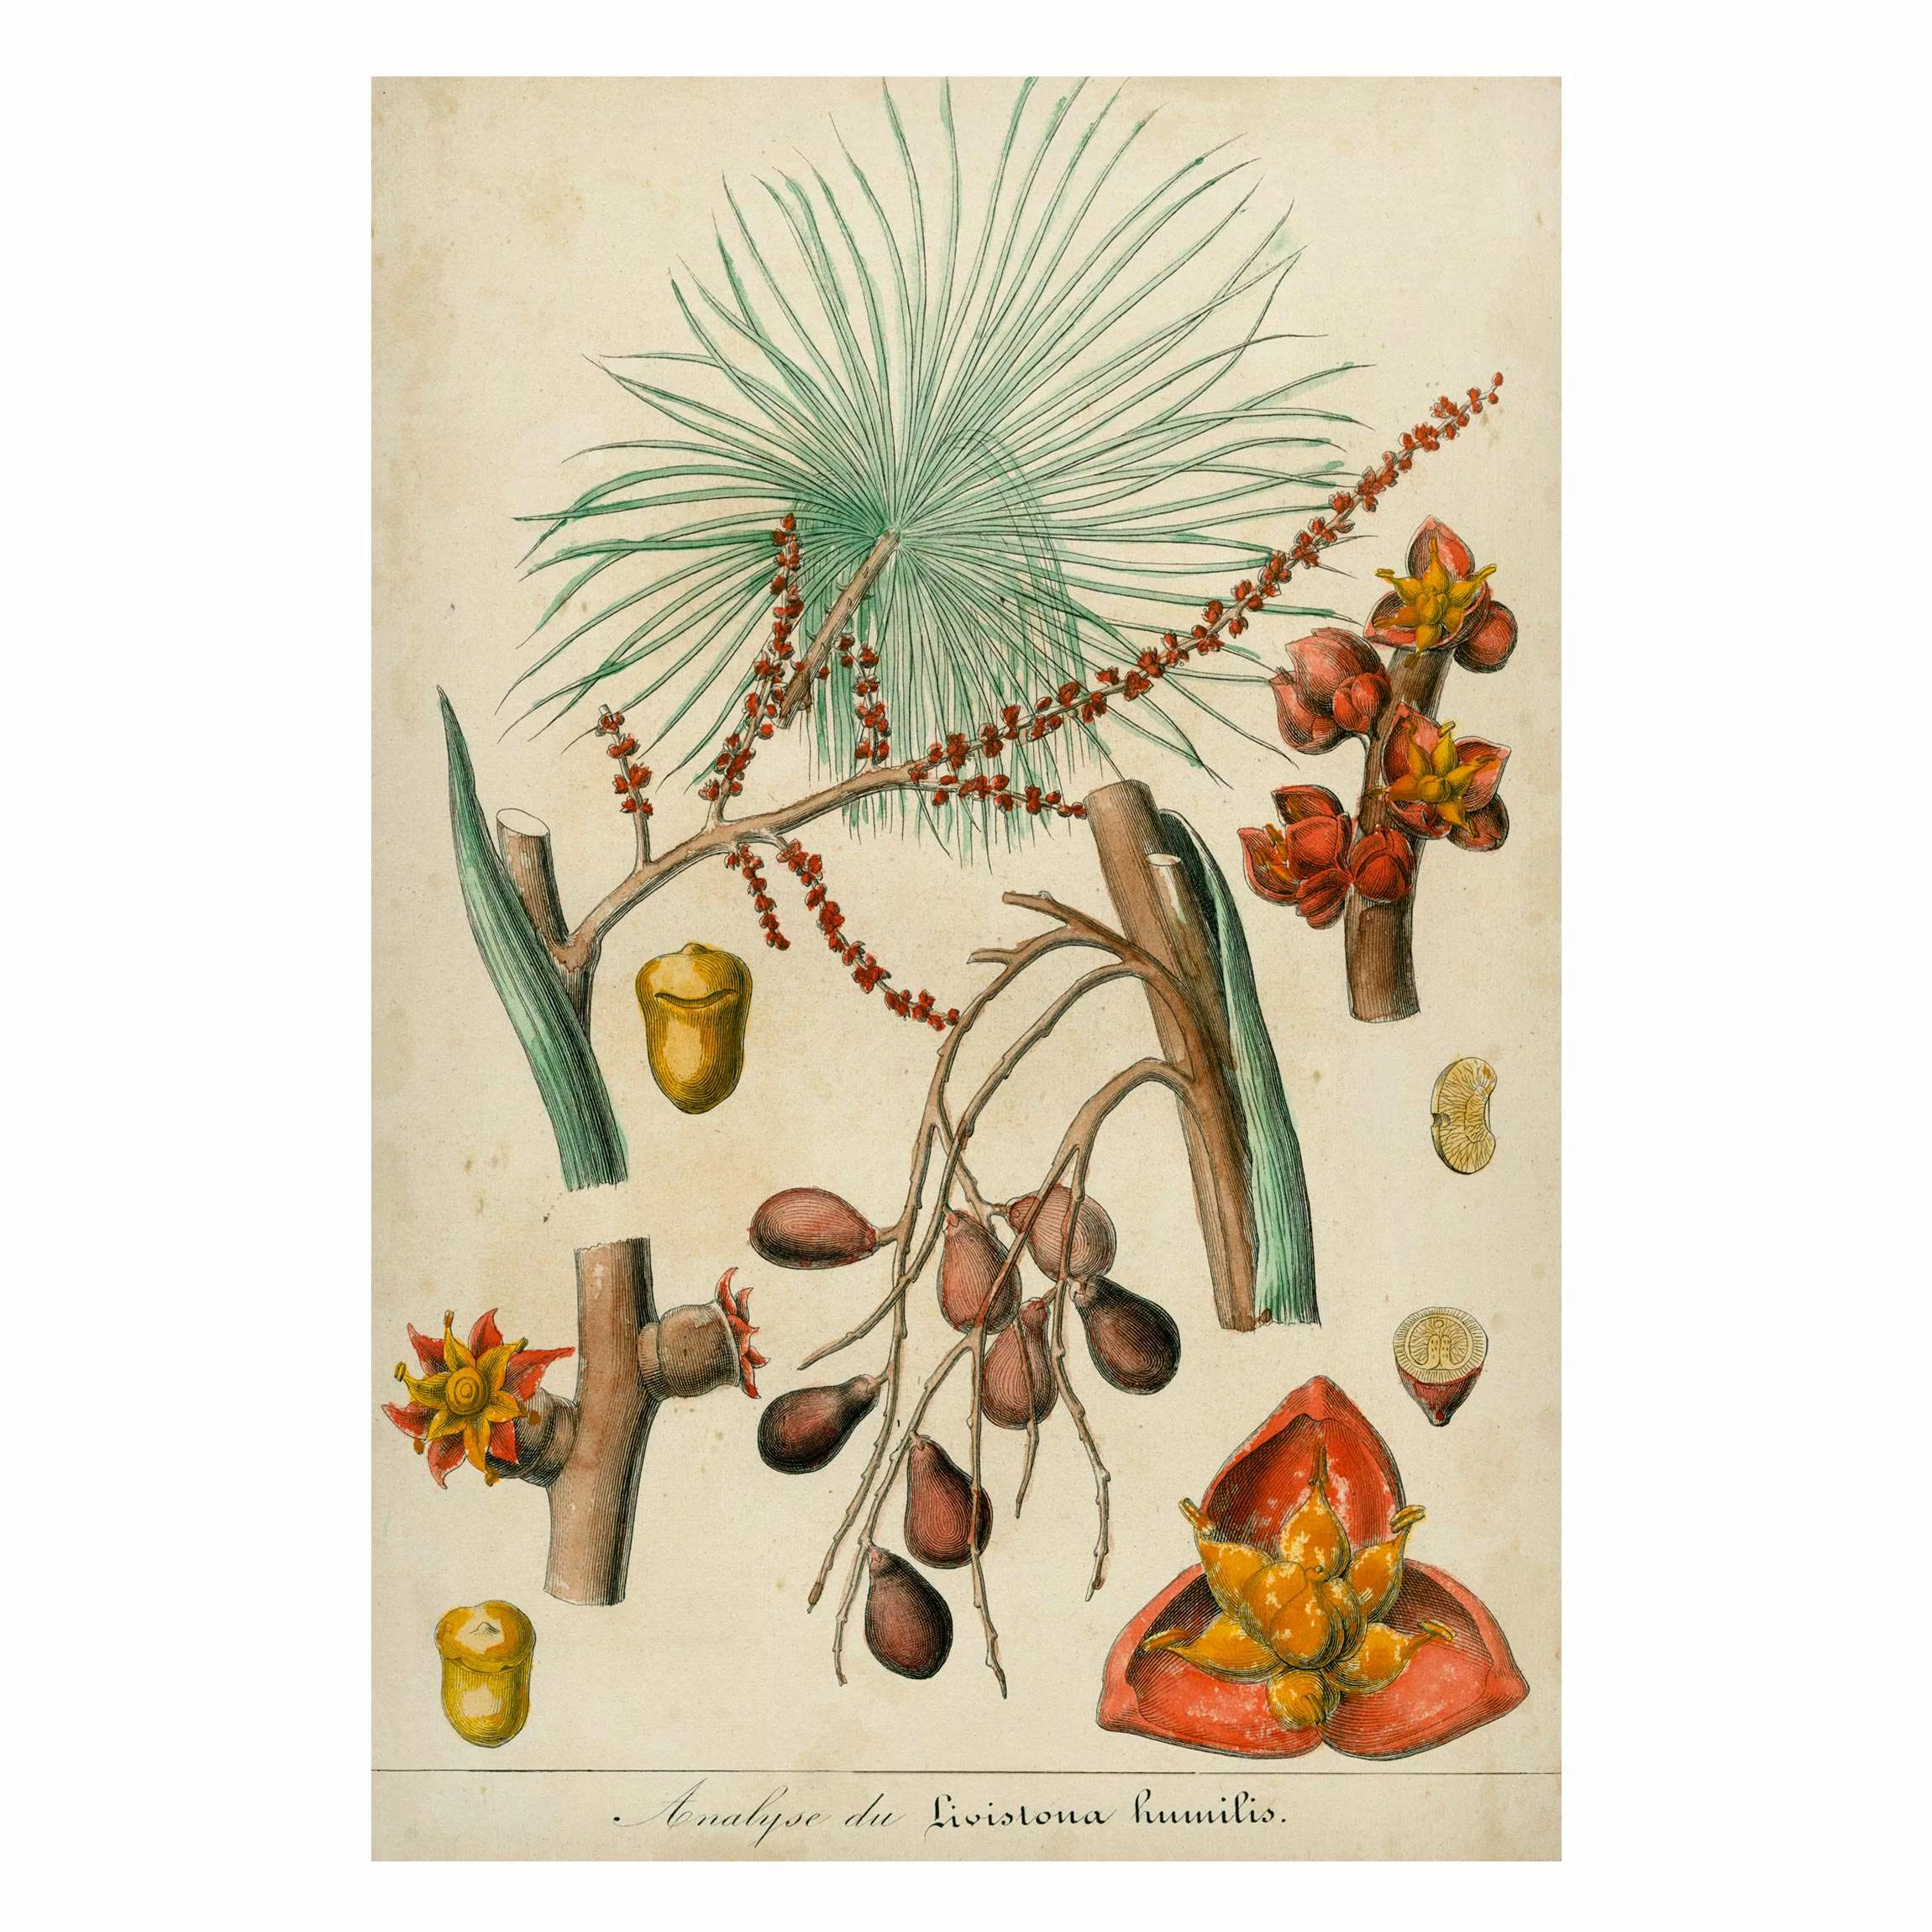 Magnettafel Blumen - Hochformat 2:3 Vintage Lehrtafel Exotische Palmen III günstig online kaufen